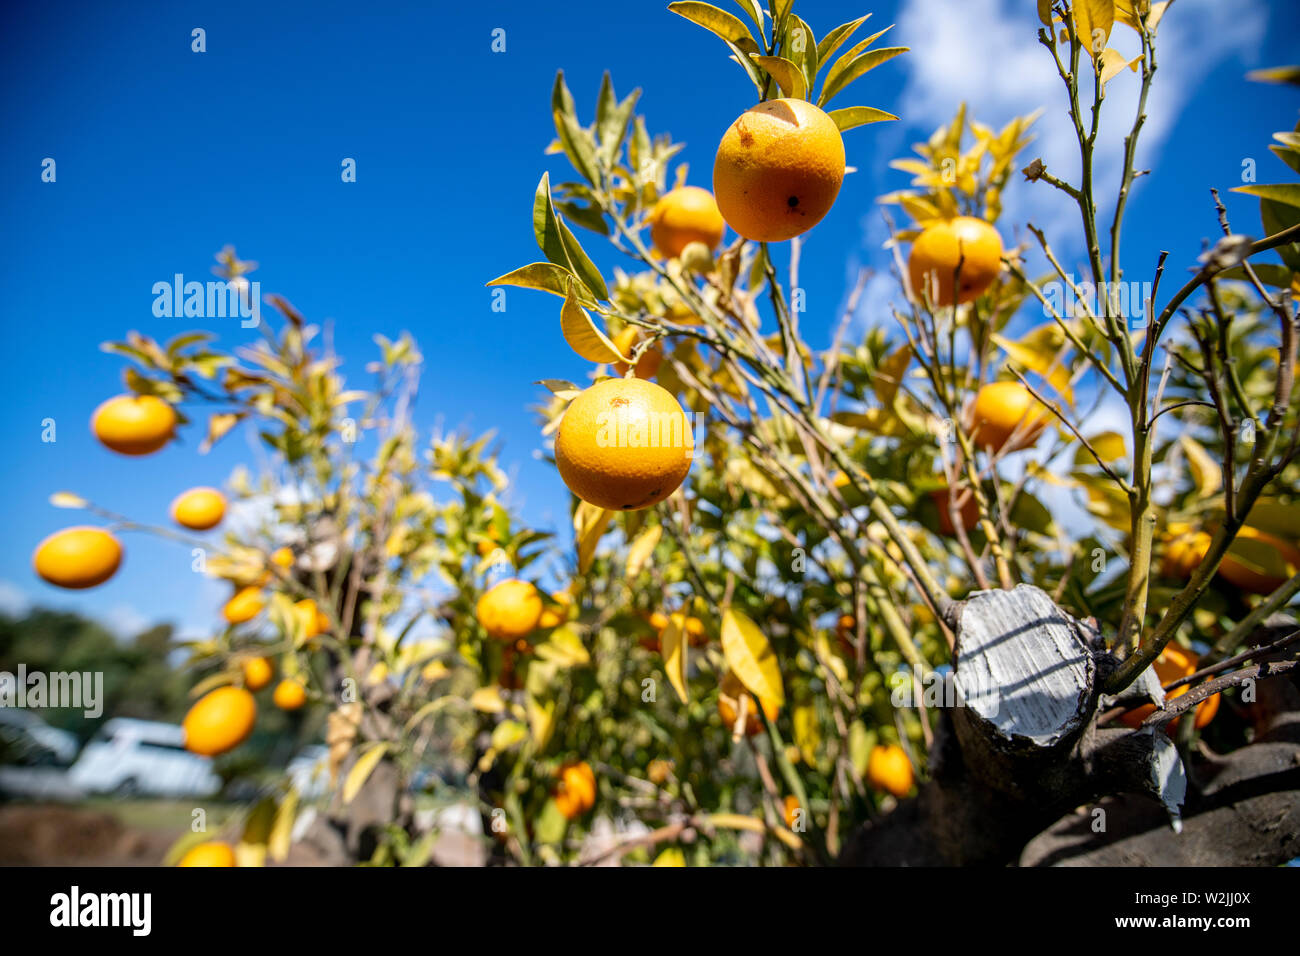 Marbella Themenbild Sommer, Orangen   Orangen an einem Orangenbaum vor blauem Himmel bei strahlendem Sonnenschein. Stock Photo